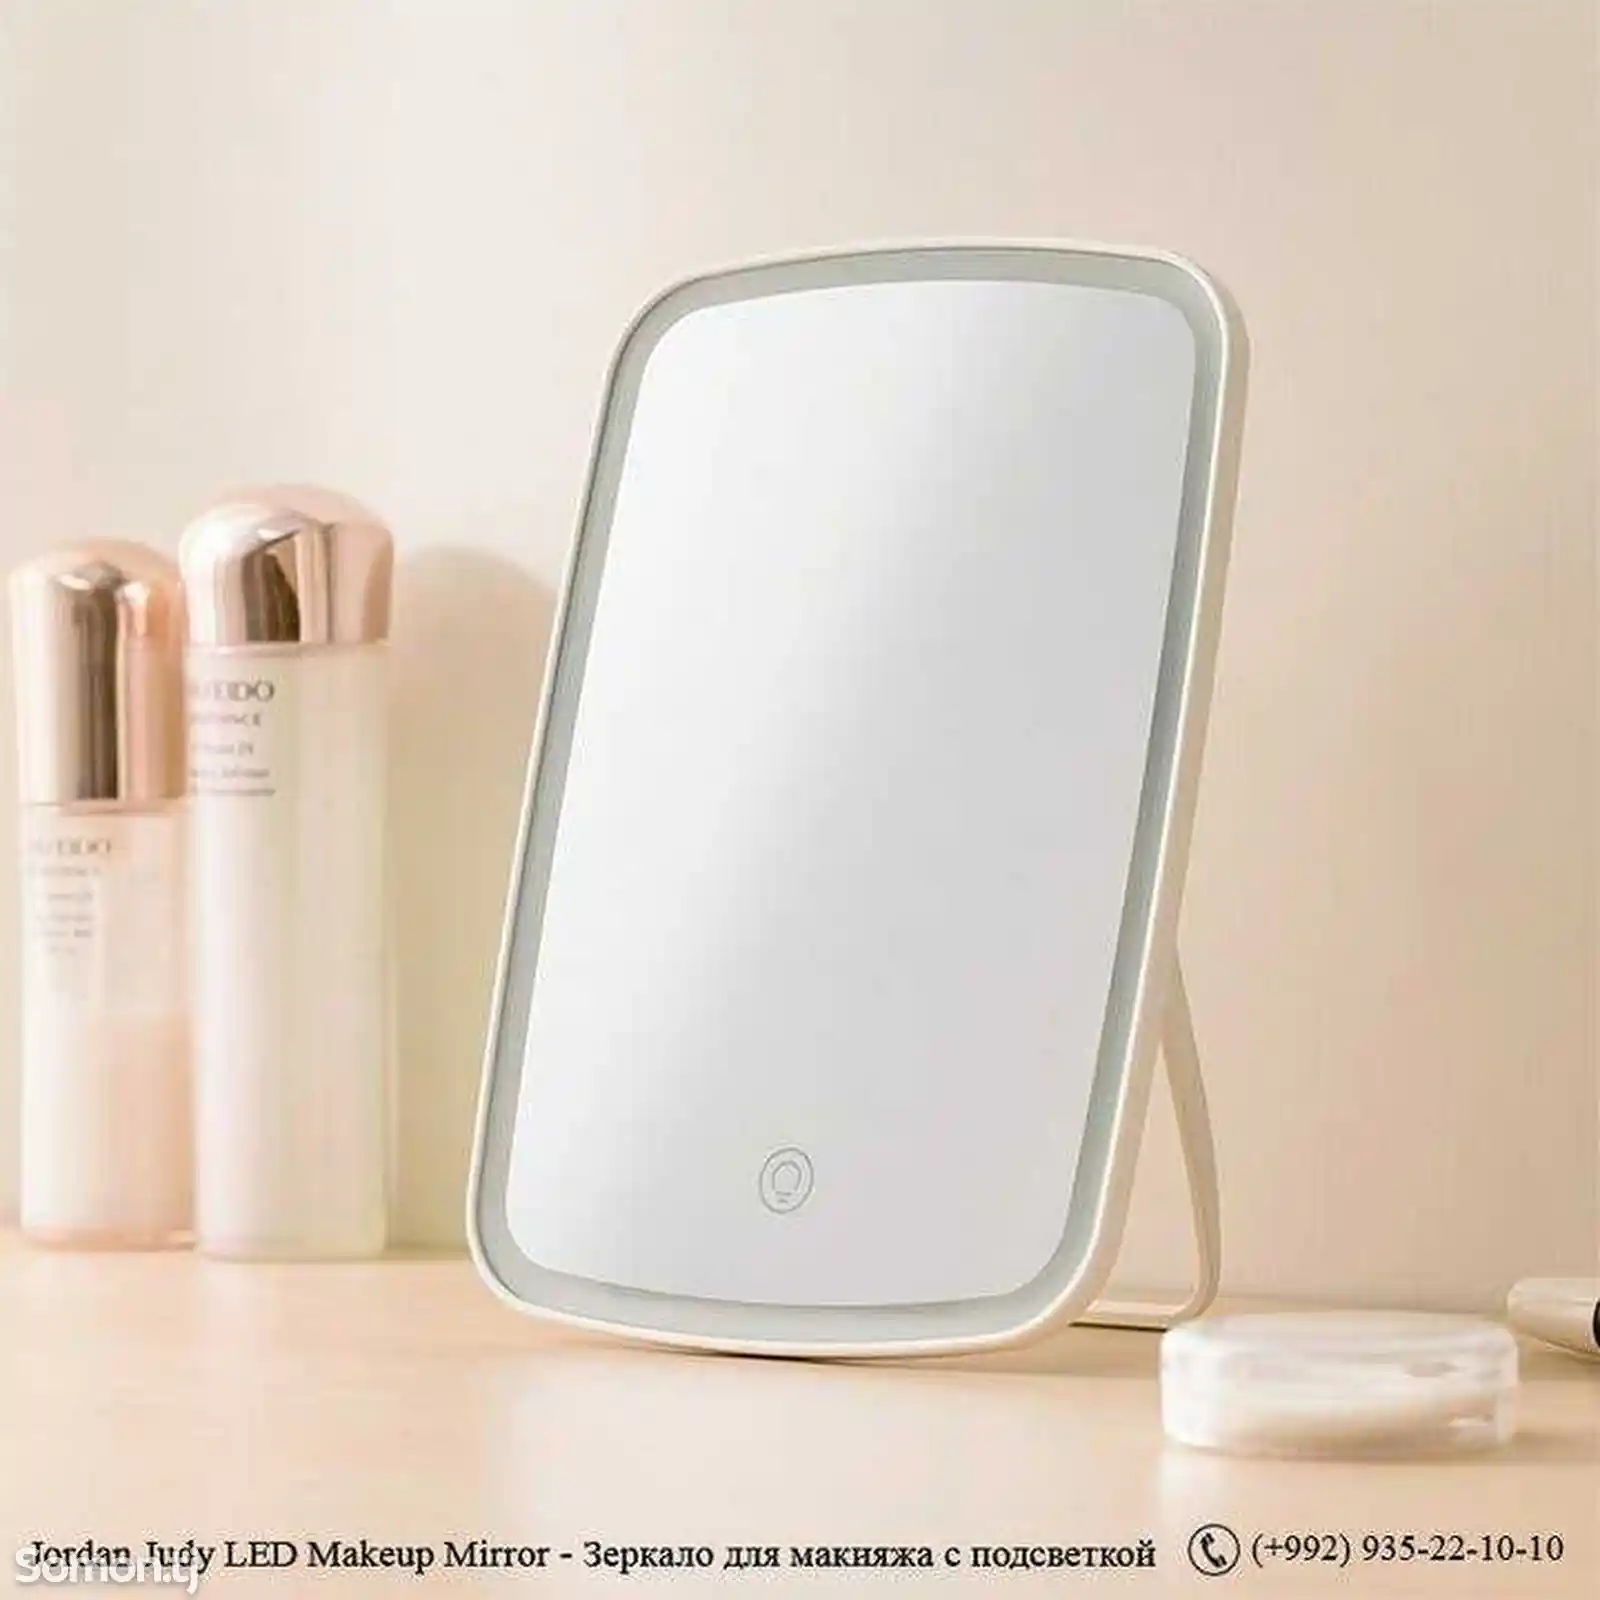 Jordan Judy LED Makeup Mirror - Зеркало для макияжа с подсветкой-2